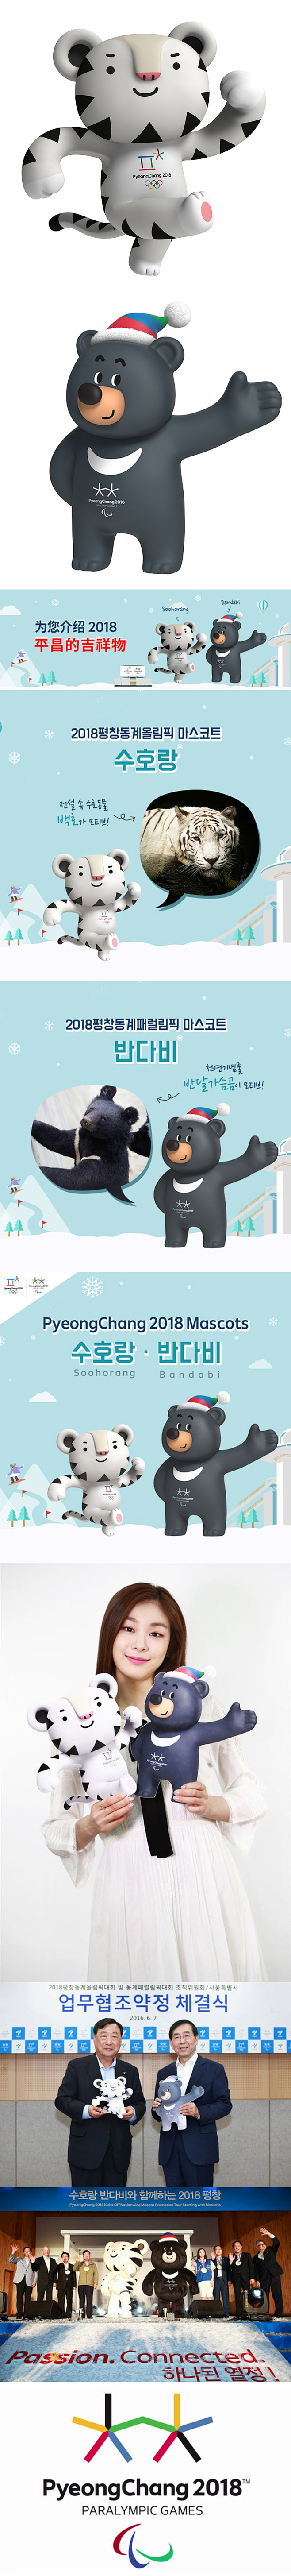 2018年韩国平昌冬季奥运会吉祥物正式亮...